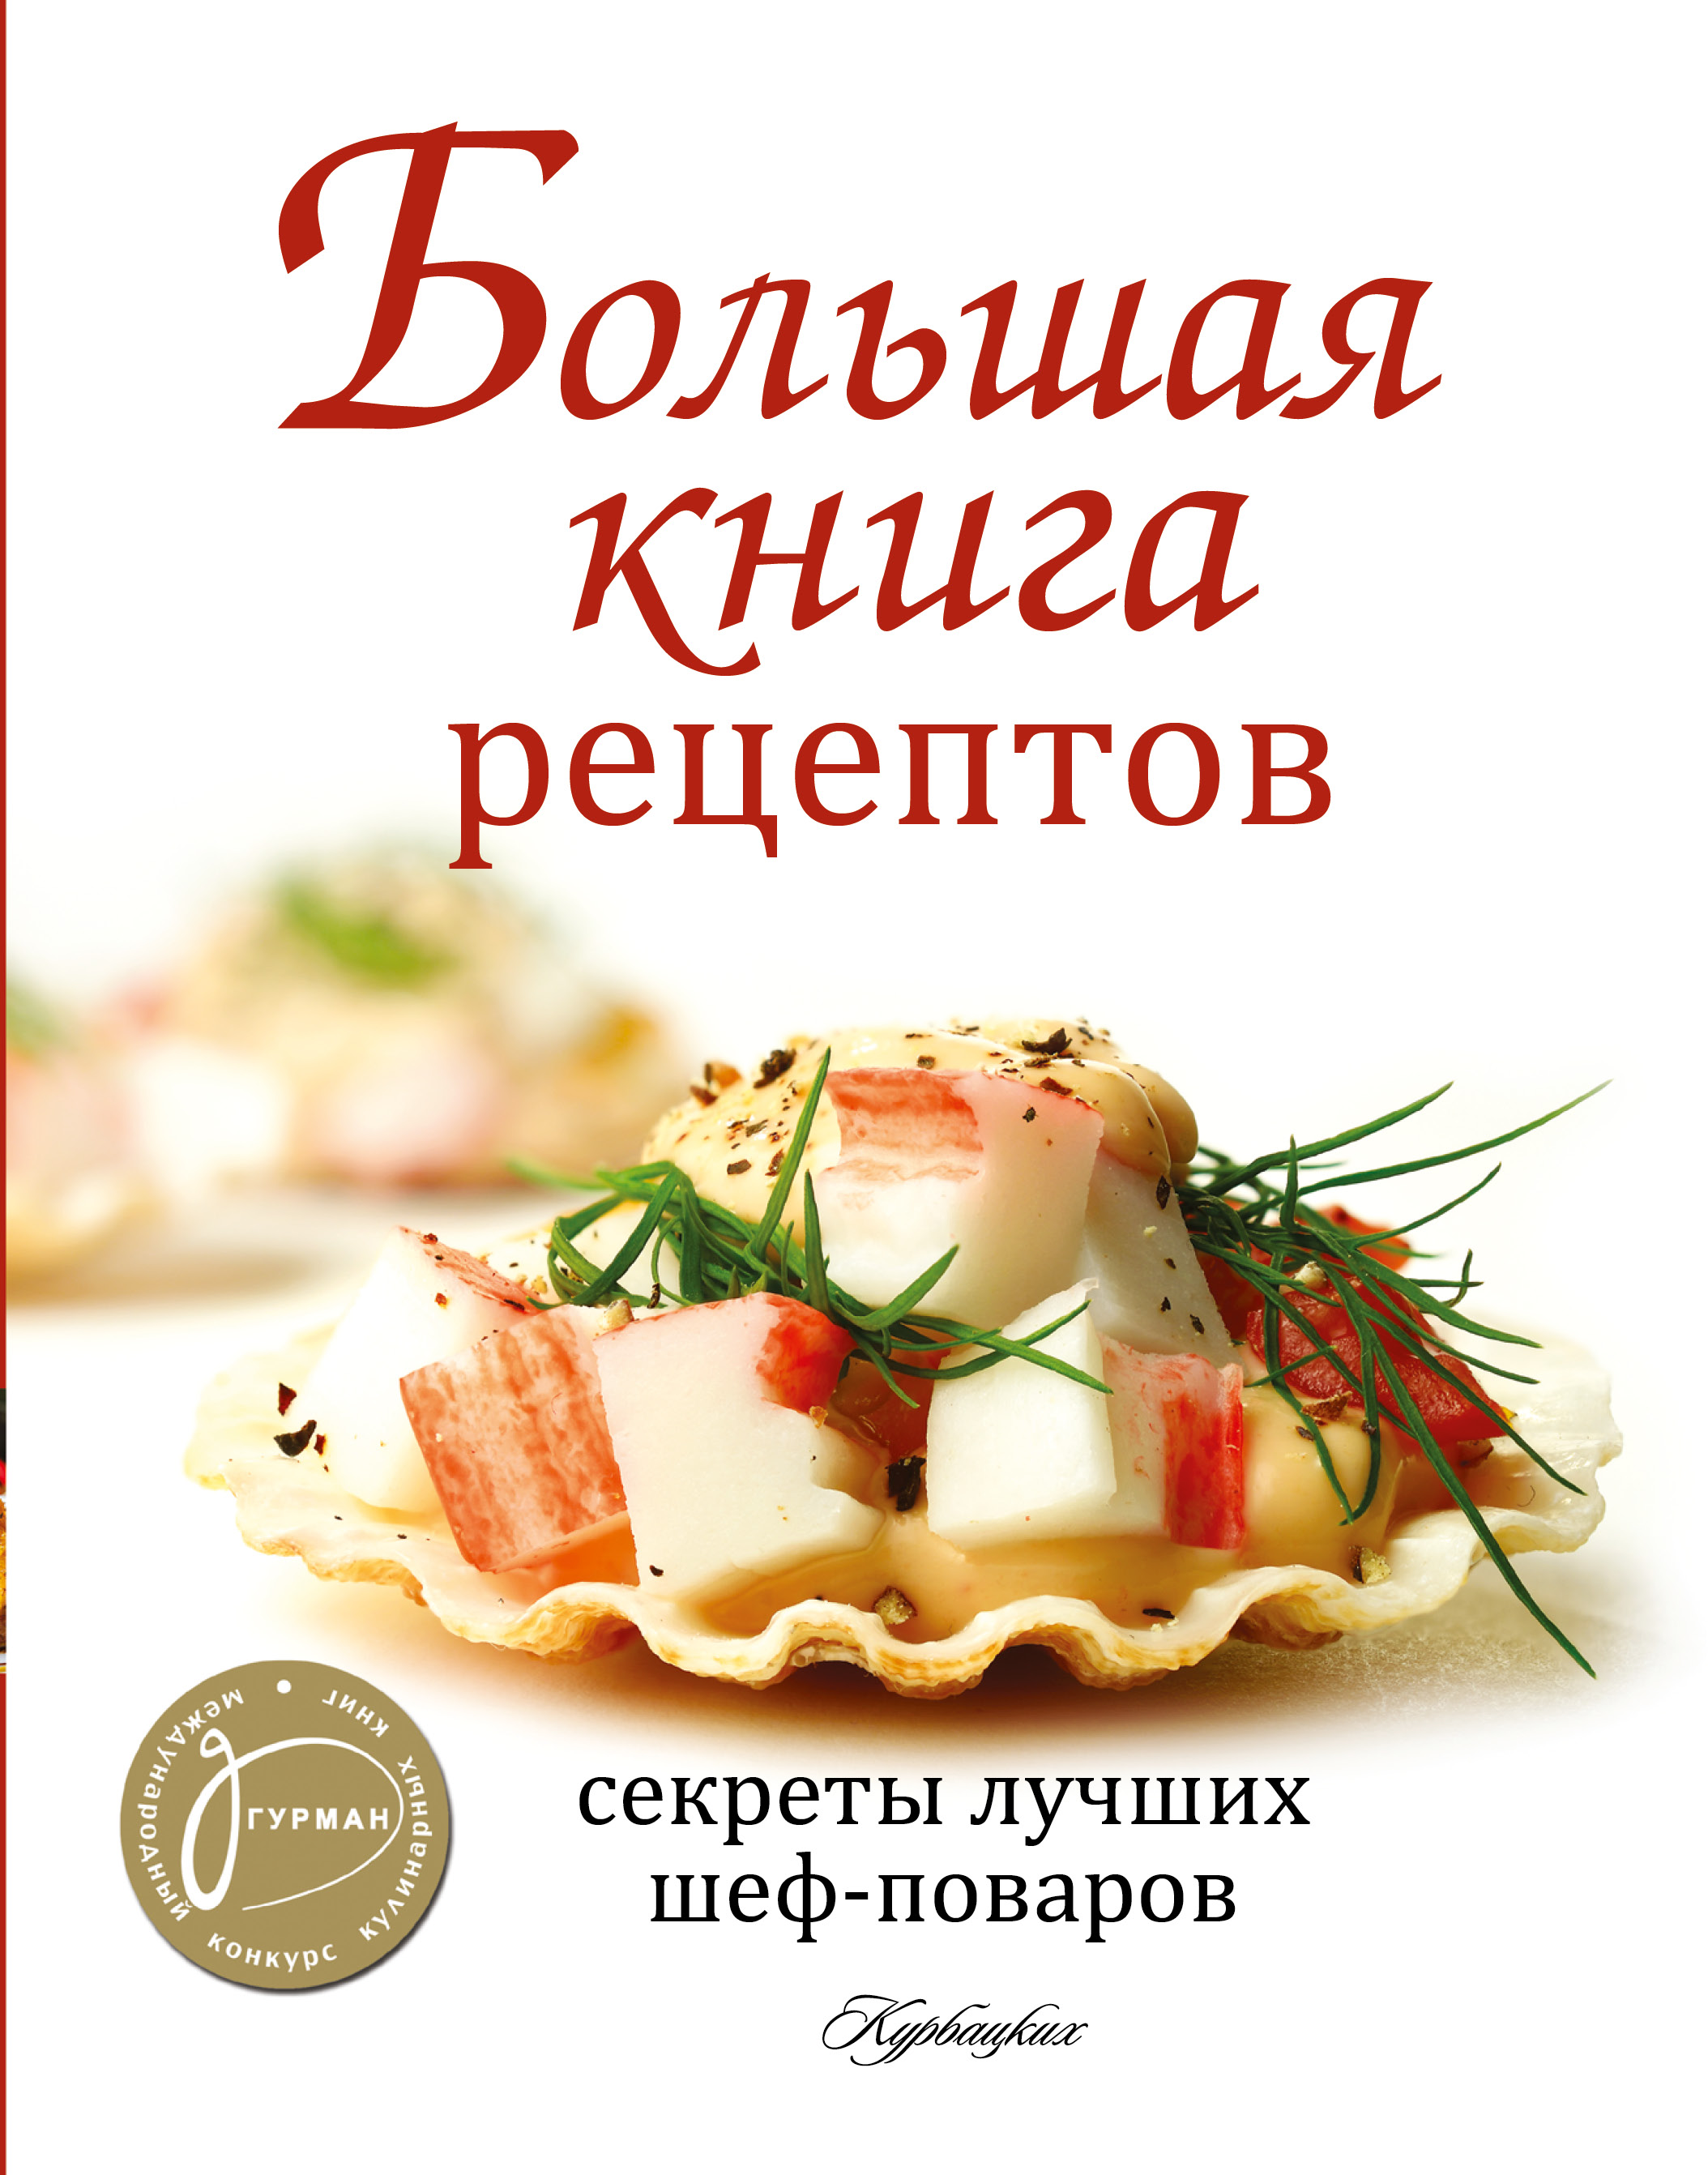 Книги про рецепты. Книга рецептов. Кулинария книга. Книга кулинарных рецептов. Обложка для кулинарной книги.